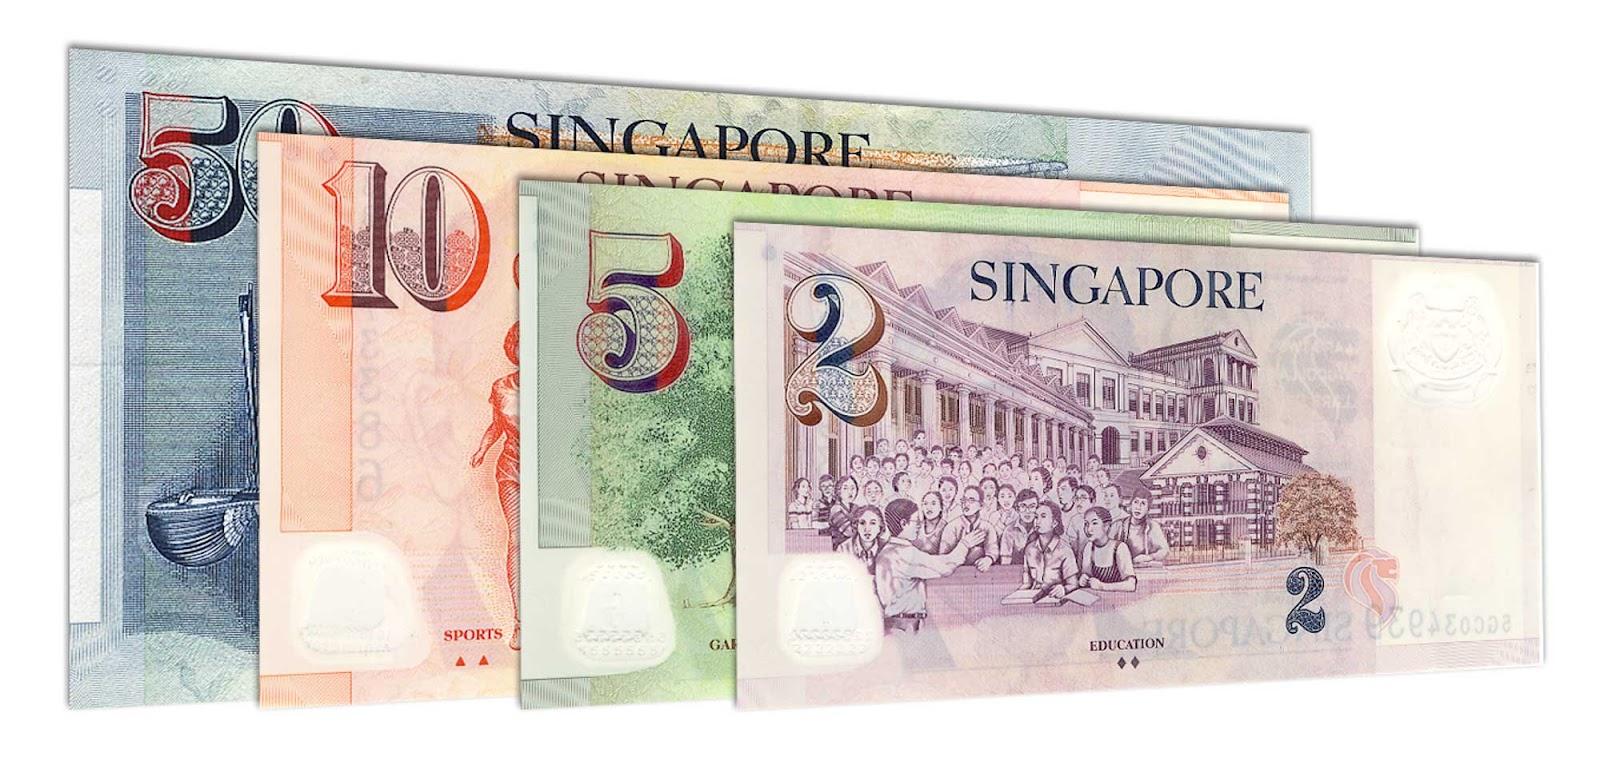 Singapore dollar banknote series